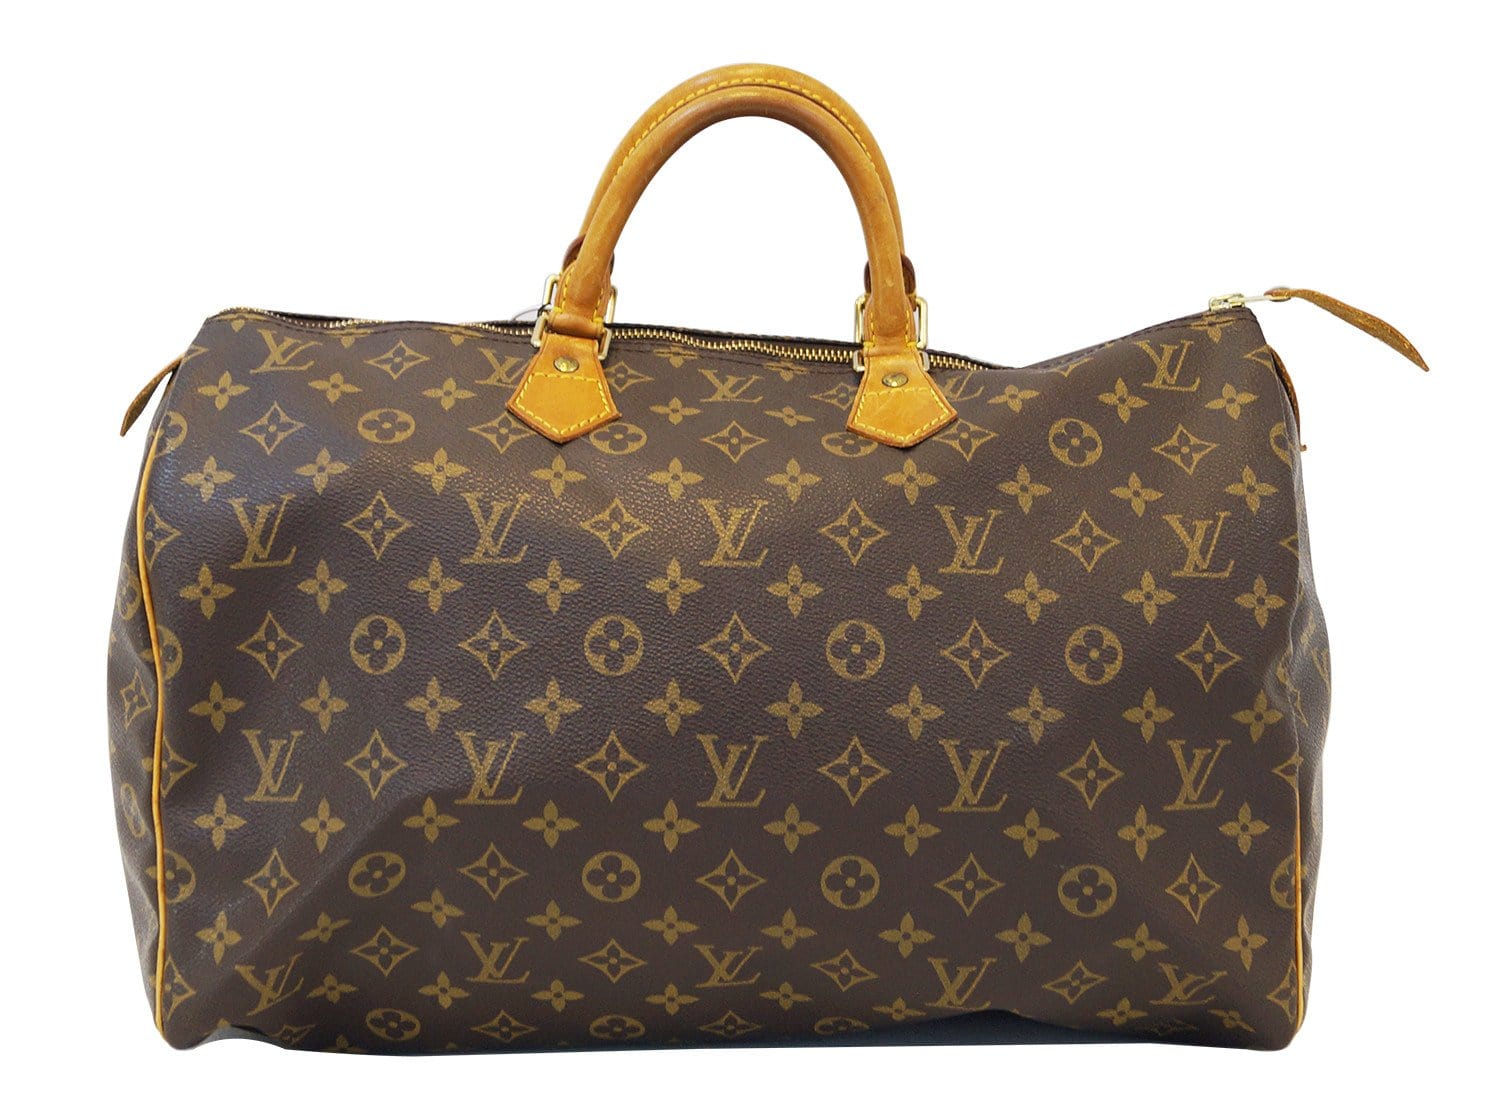 LOUIS VUITTON Speedy Round Handbag Bag M40704